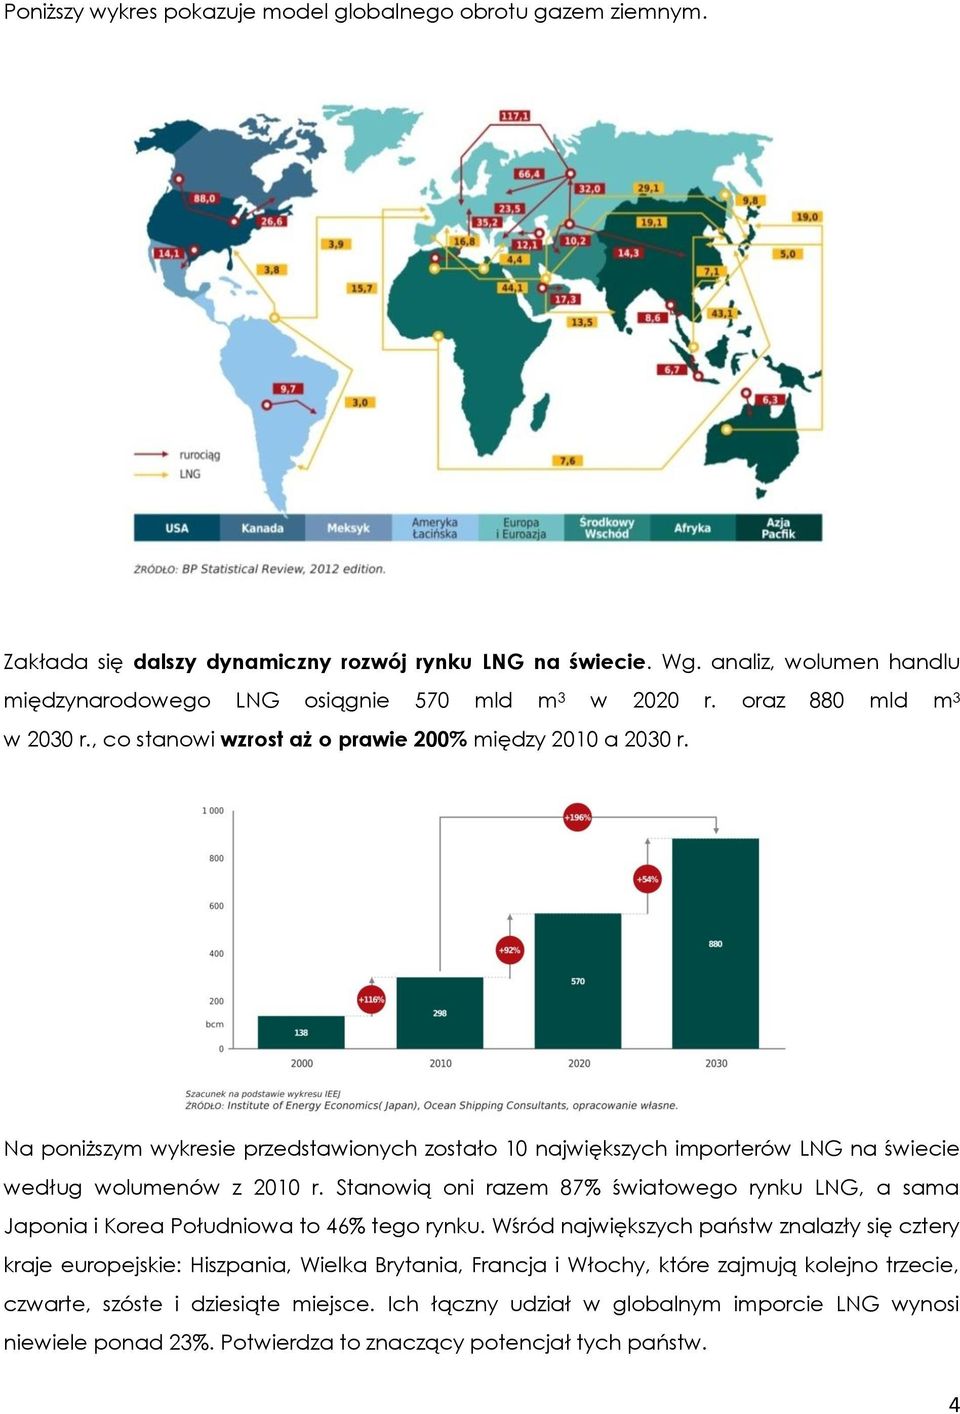 Na poniższym wykresie przedstawionych zostało 10 największych importerów LNG na świecie według wolumenów z 2010 r.